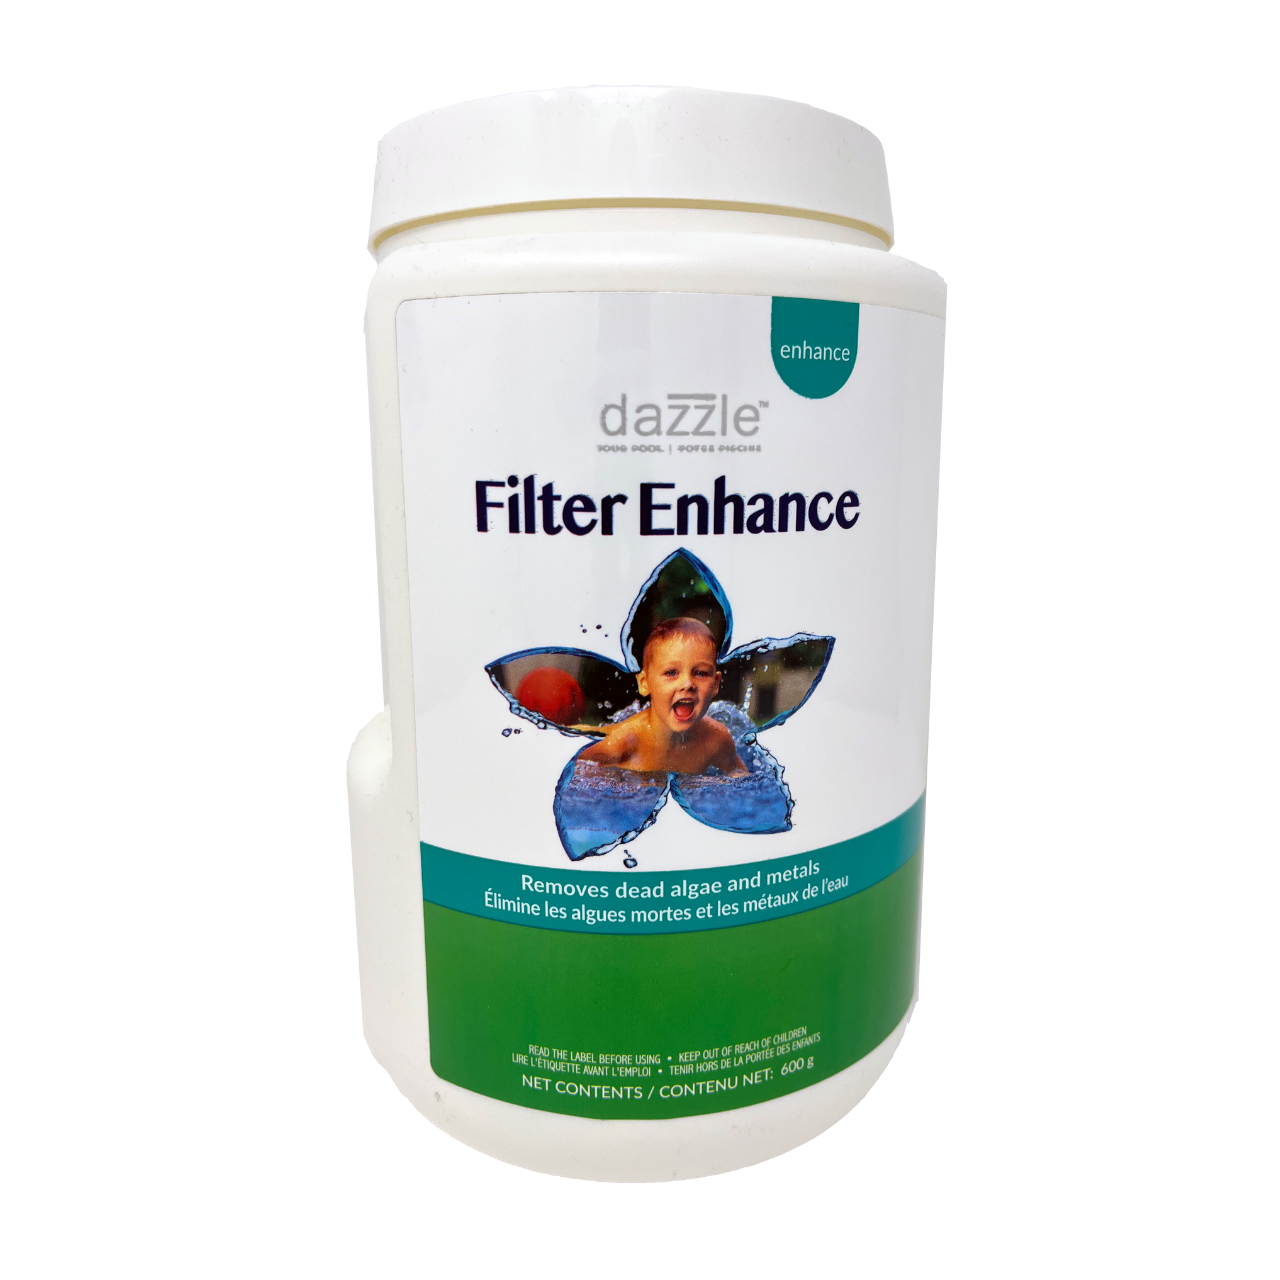 Dazzle™ Filter Enhance - Improves Filtration